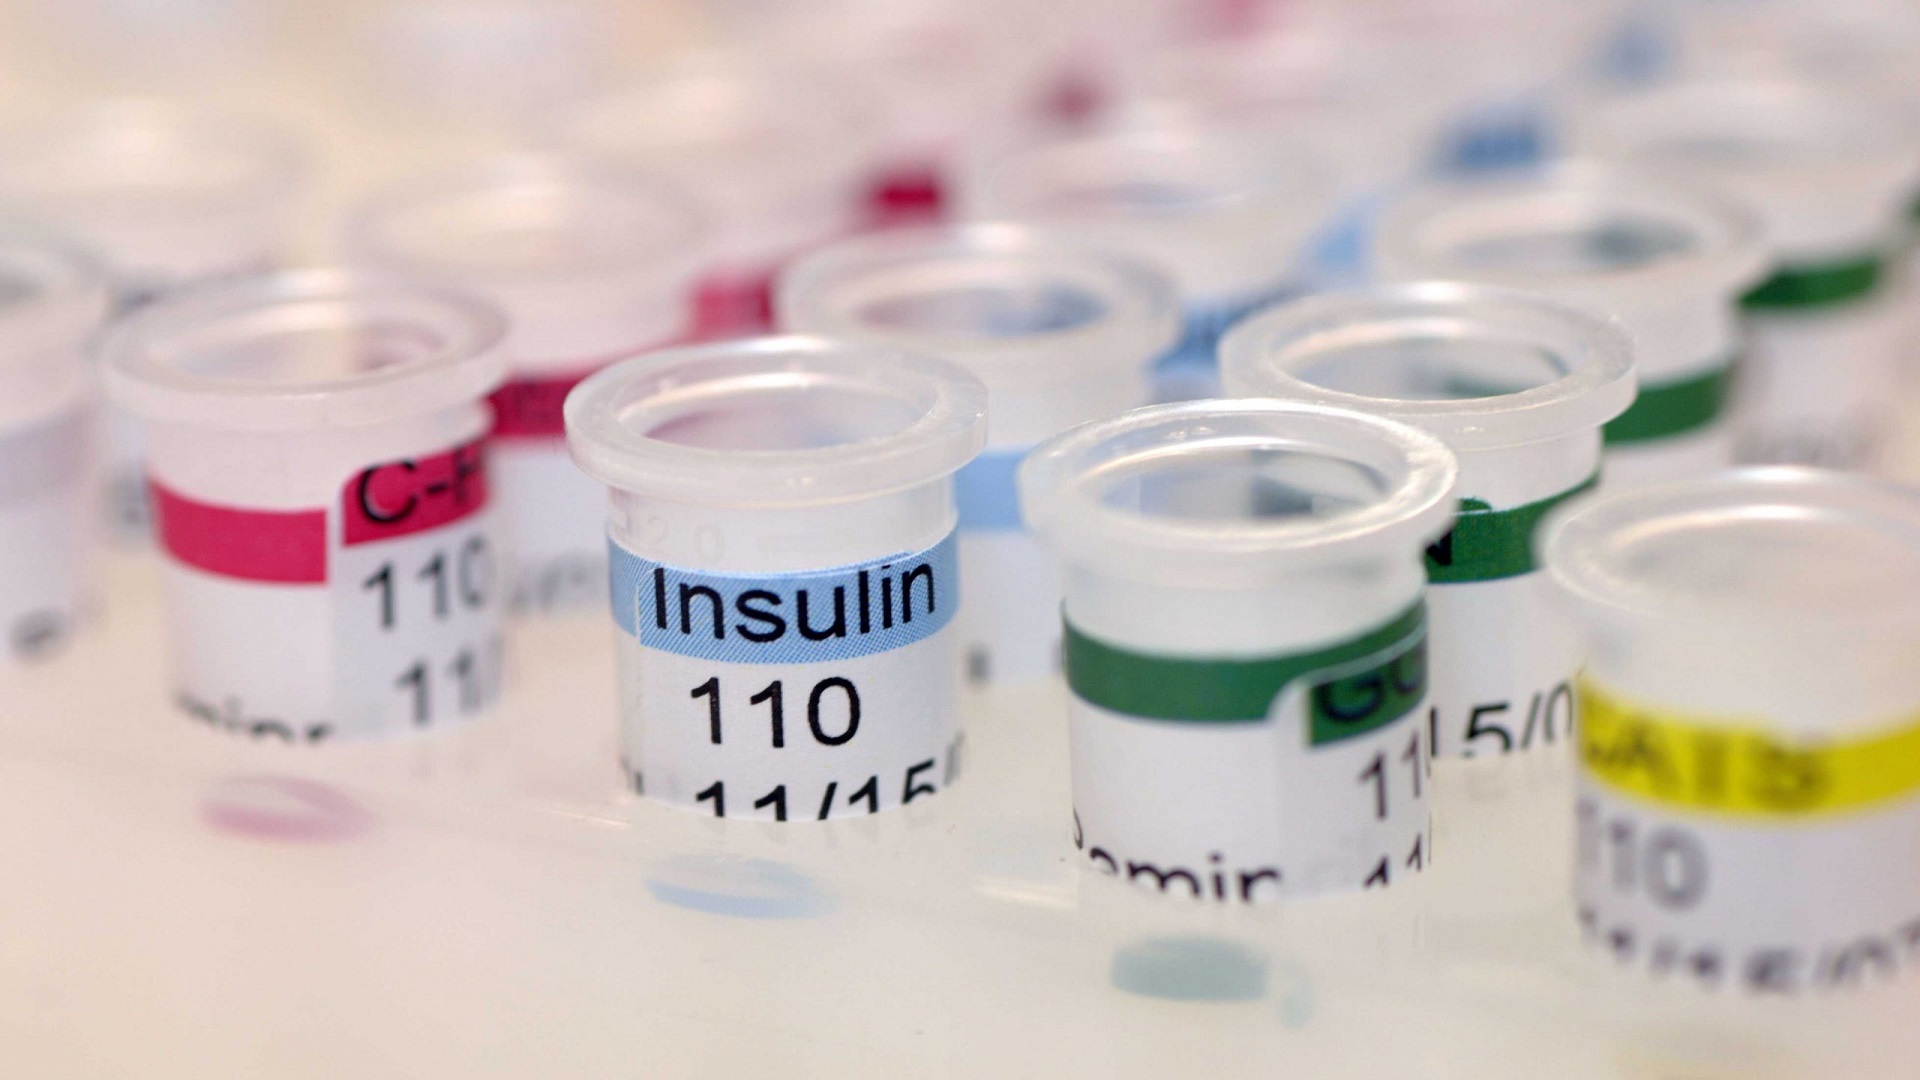 Οι ερευνητές αναπτύσσουν μια νέα εξαιρετικά γρήγορη ινσουλίνη